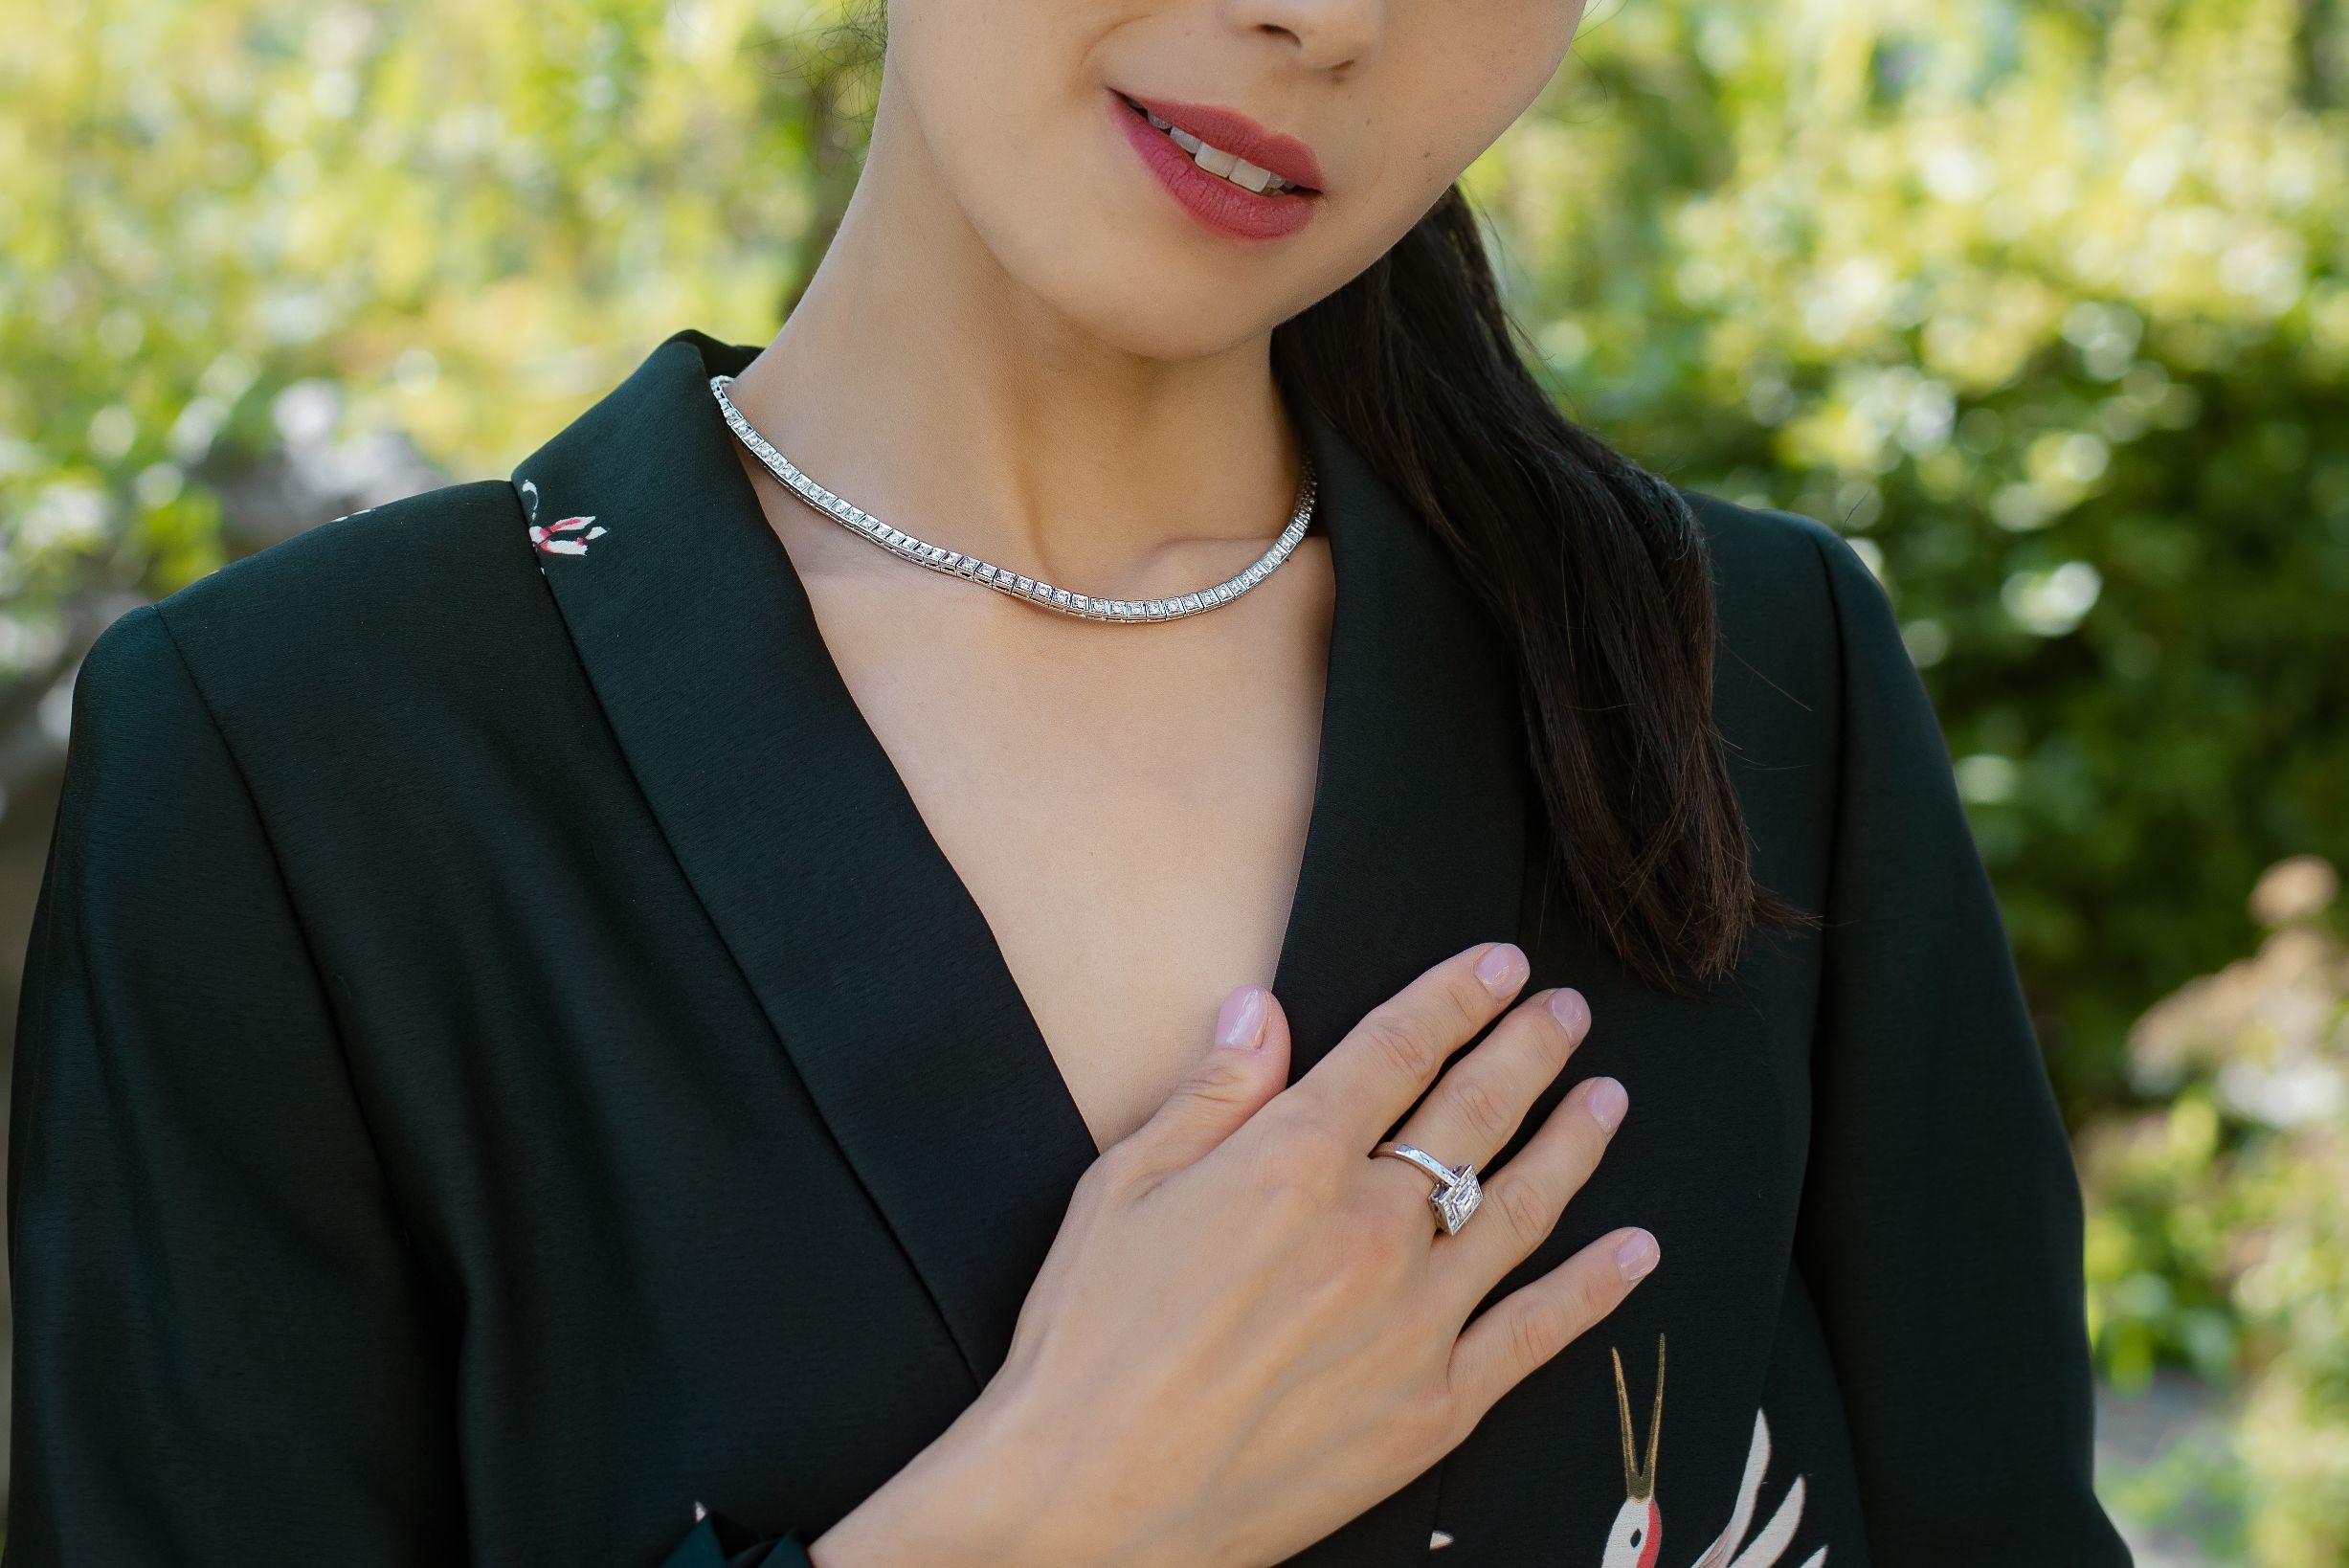 Women's 18 Karat White Gold Diamond Engagement Ring For Sale